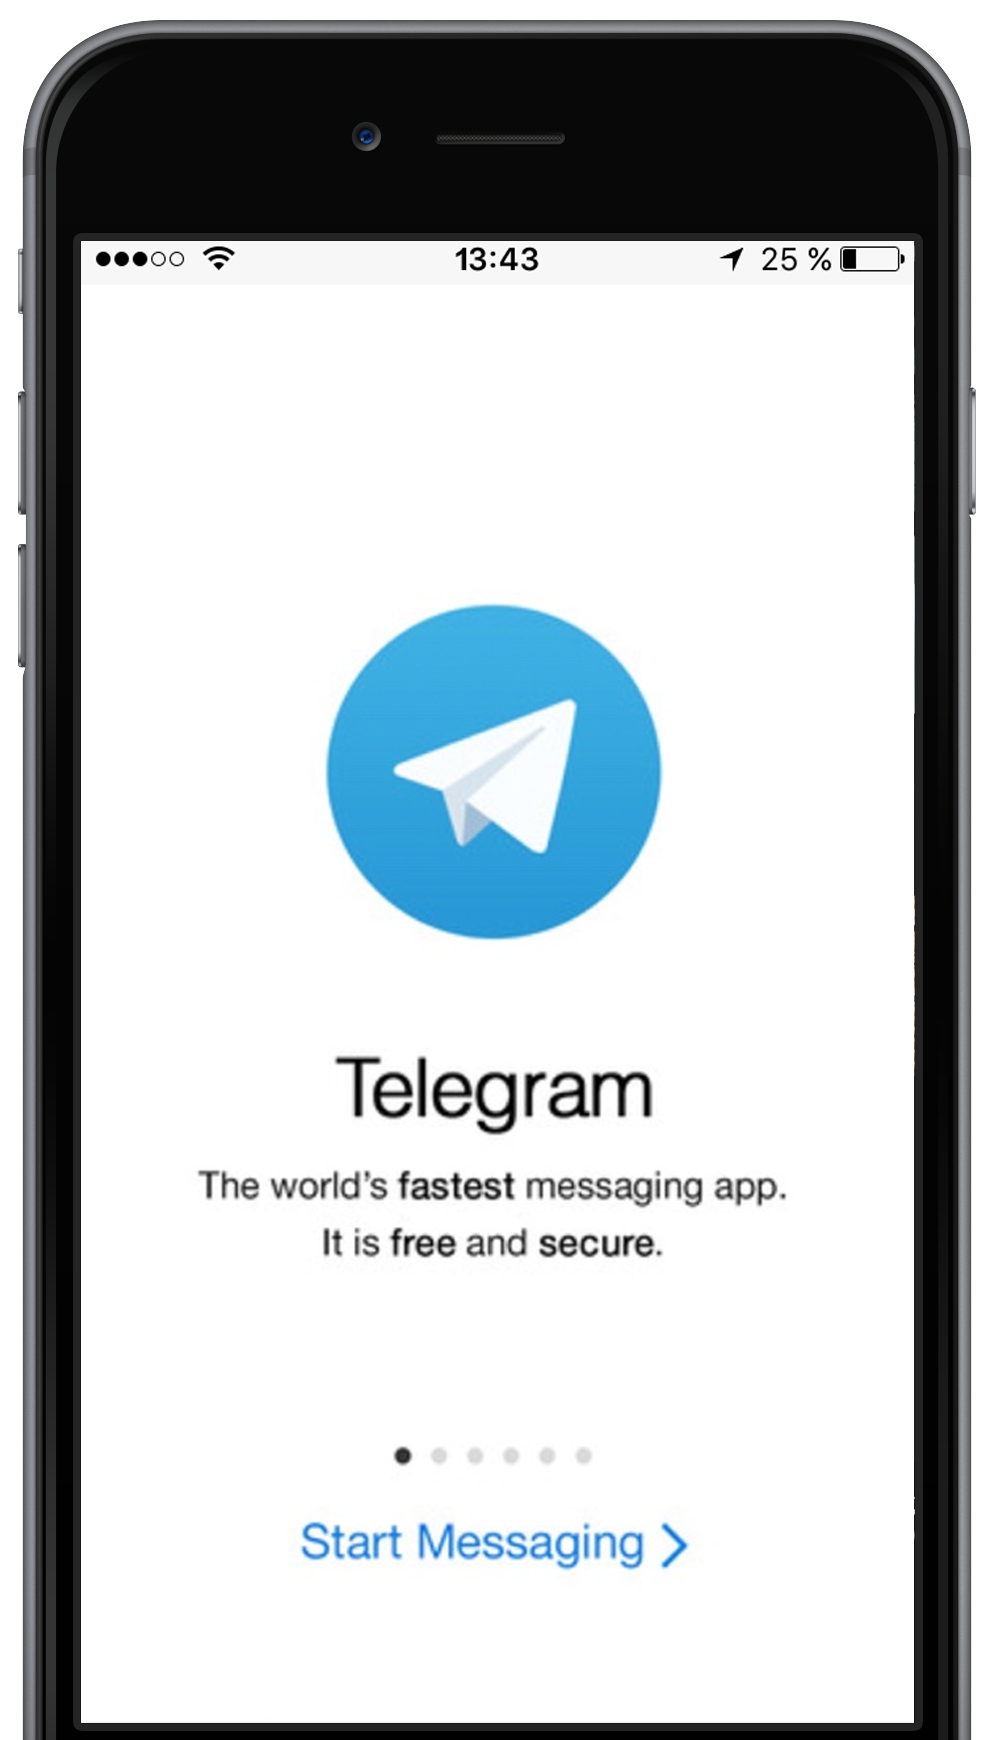 Установка телеграмм на телефон на русском языке бесплатно и полностью скачать фото 93